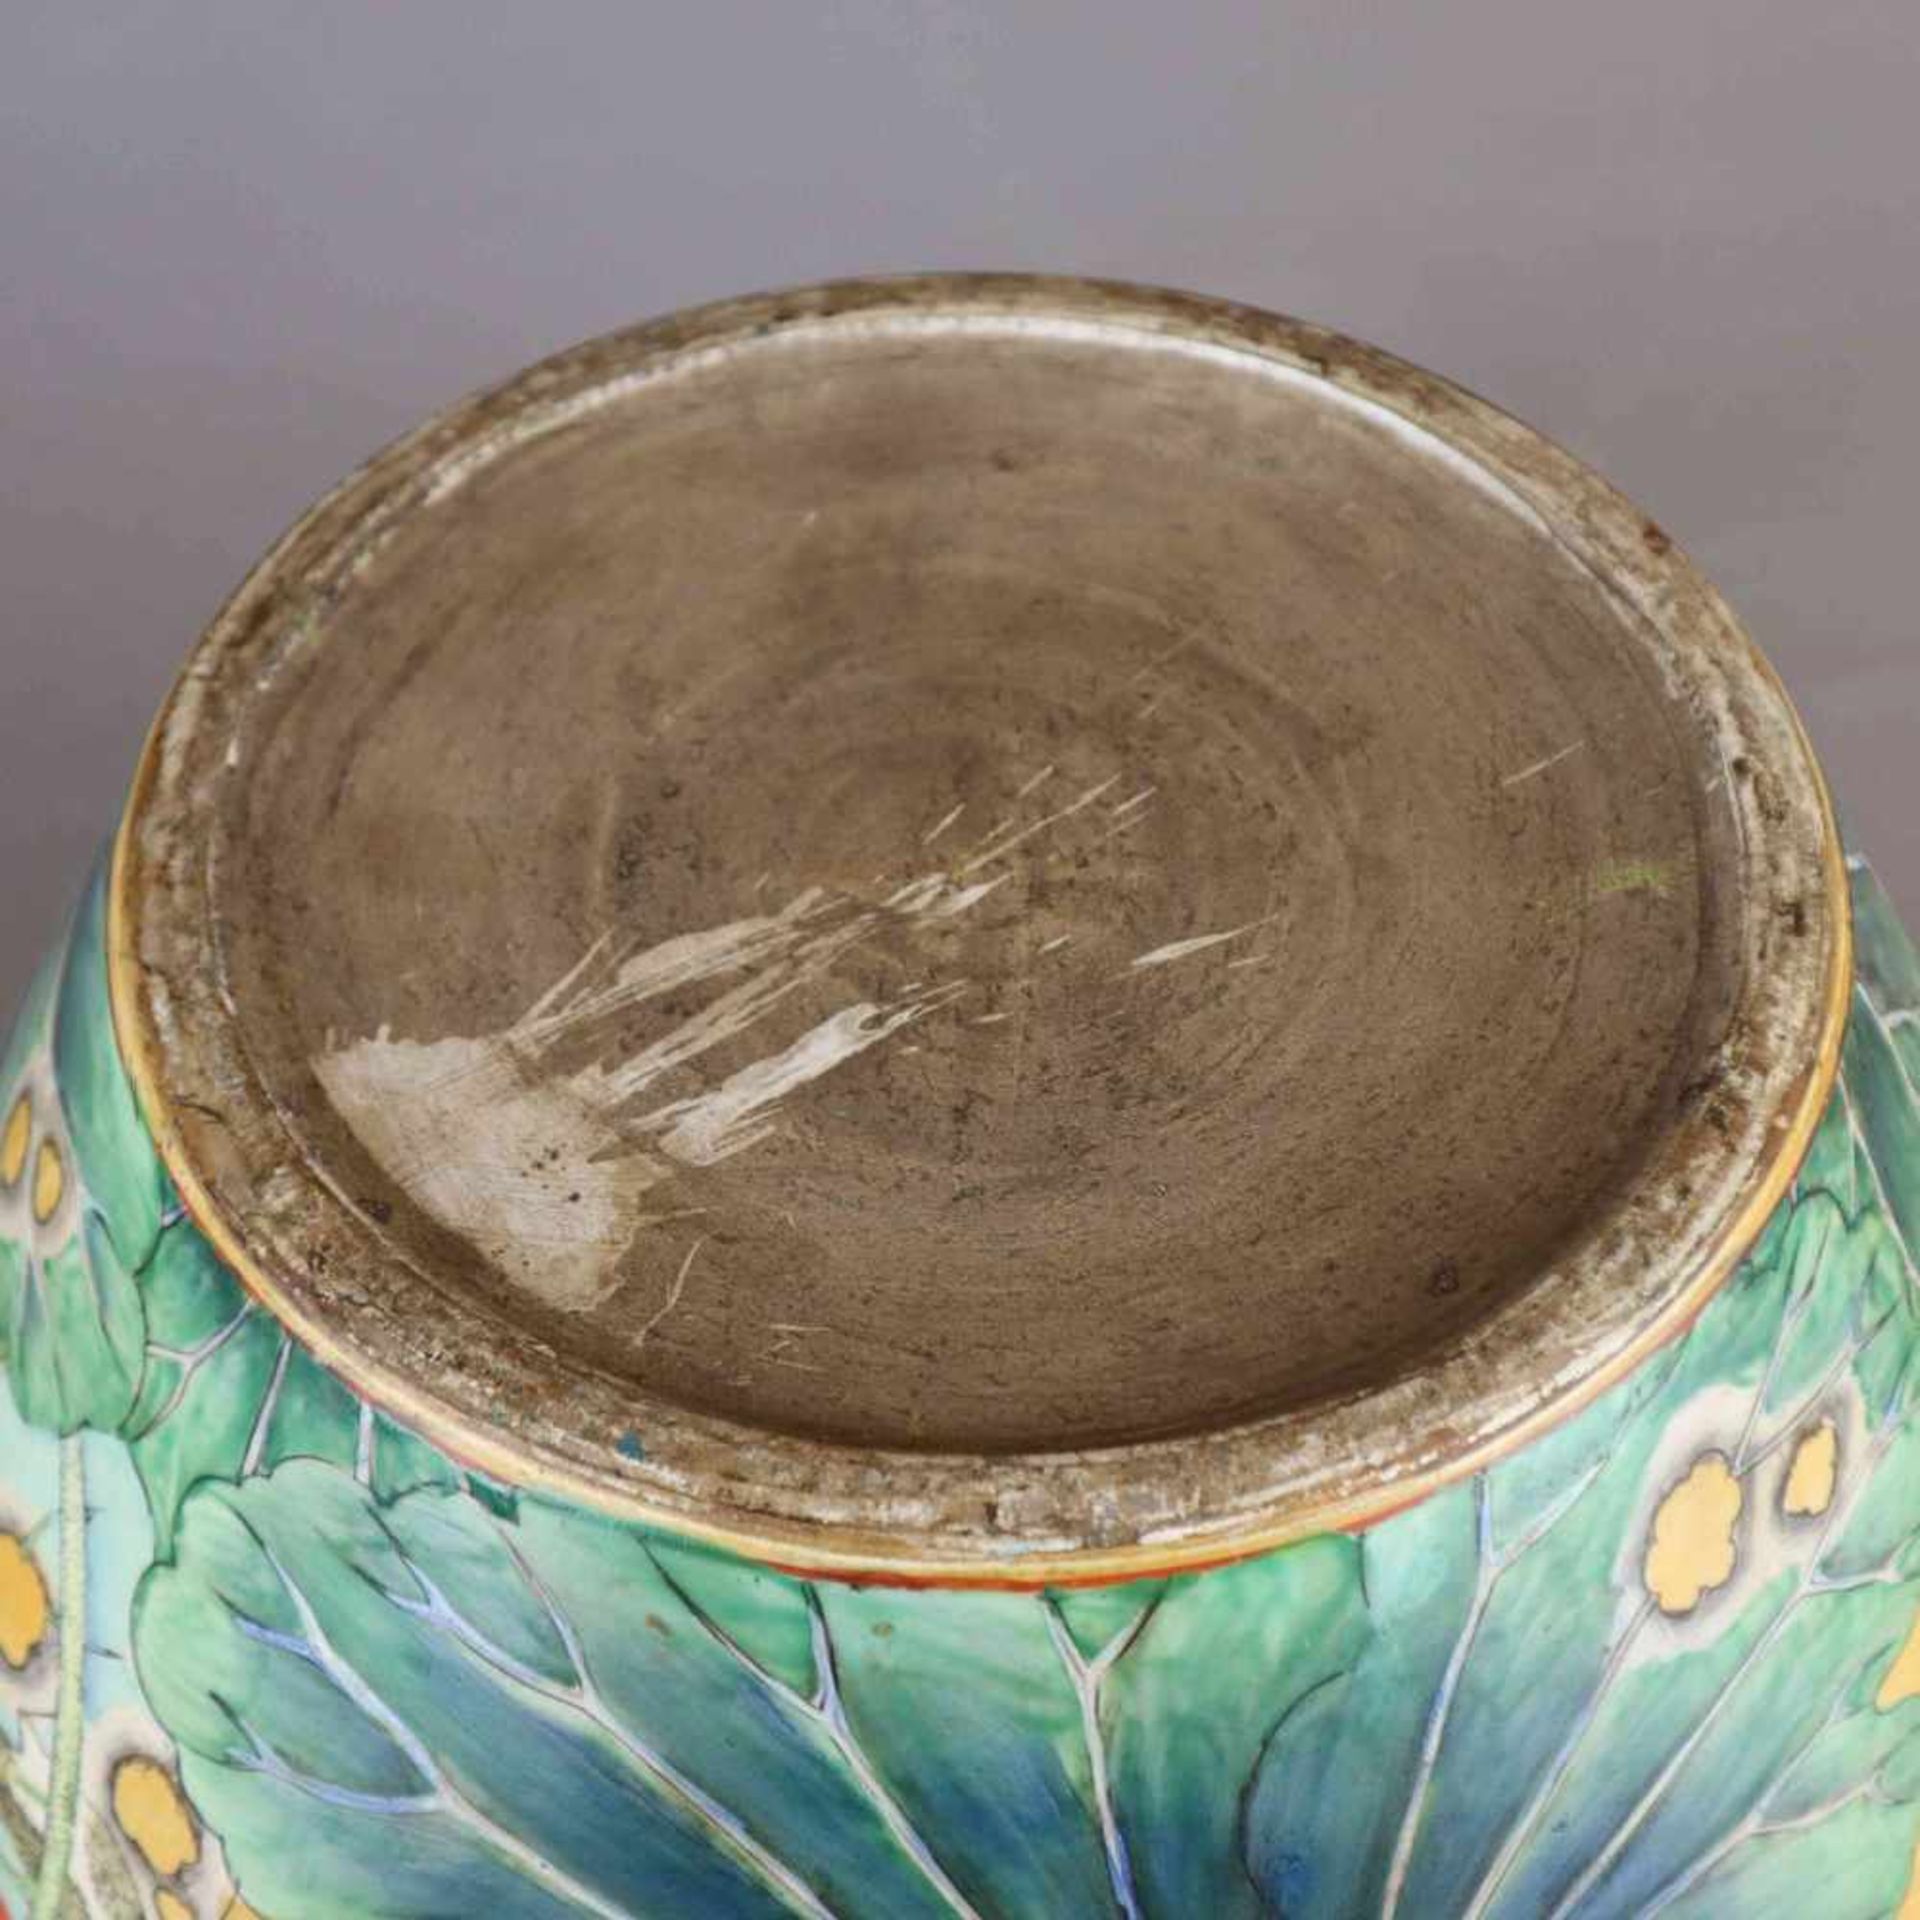 Fishbowl - China, 20.Jh., Porzellan, ansteigende Außenwandung sowie der abgesetzte breite Rand - Image 13 of 13